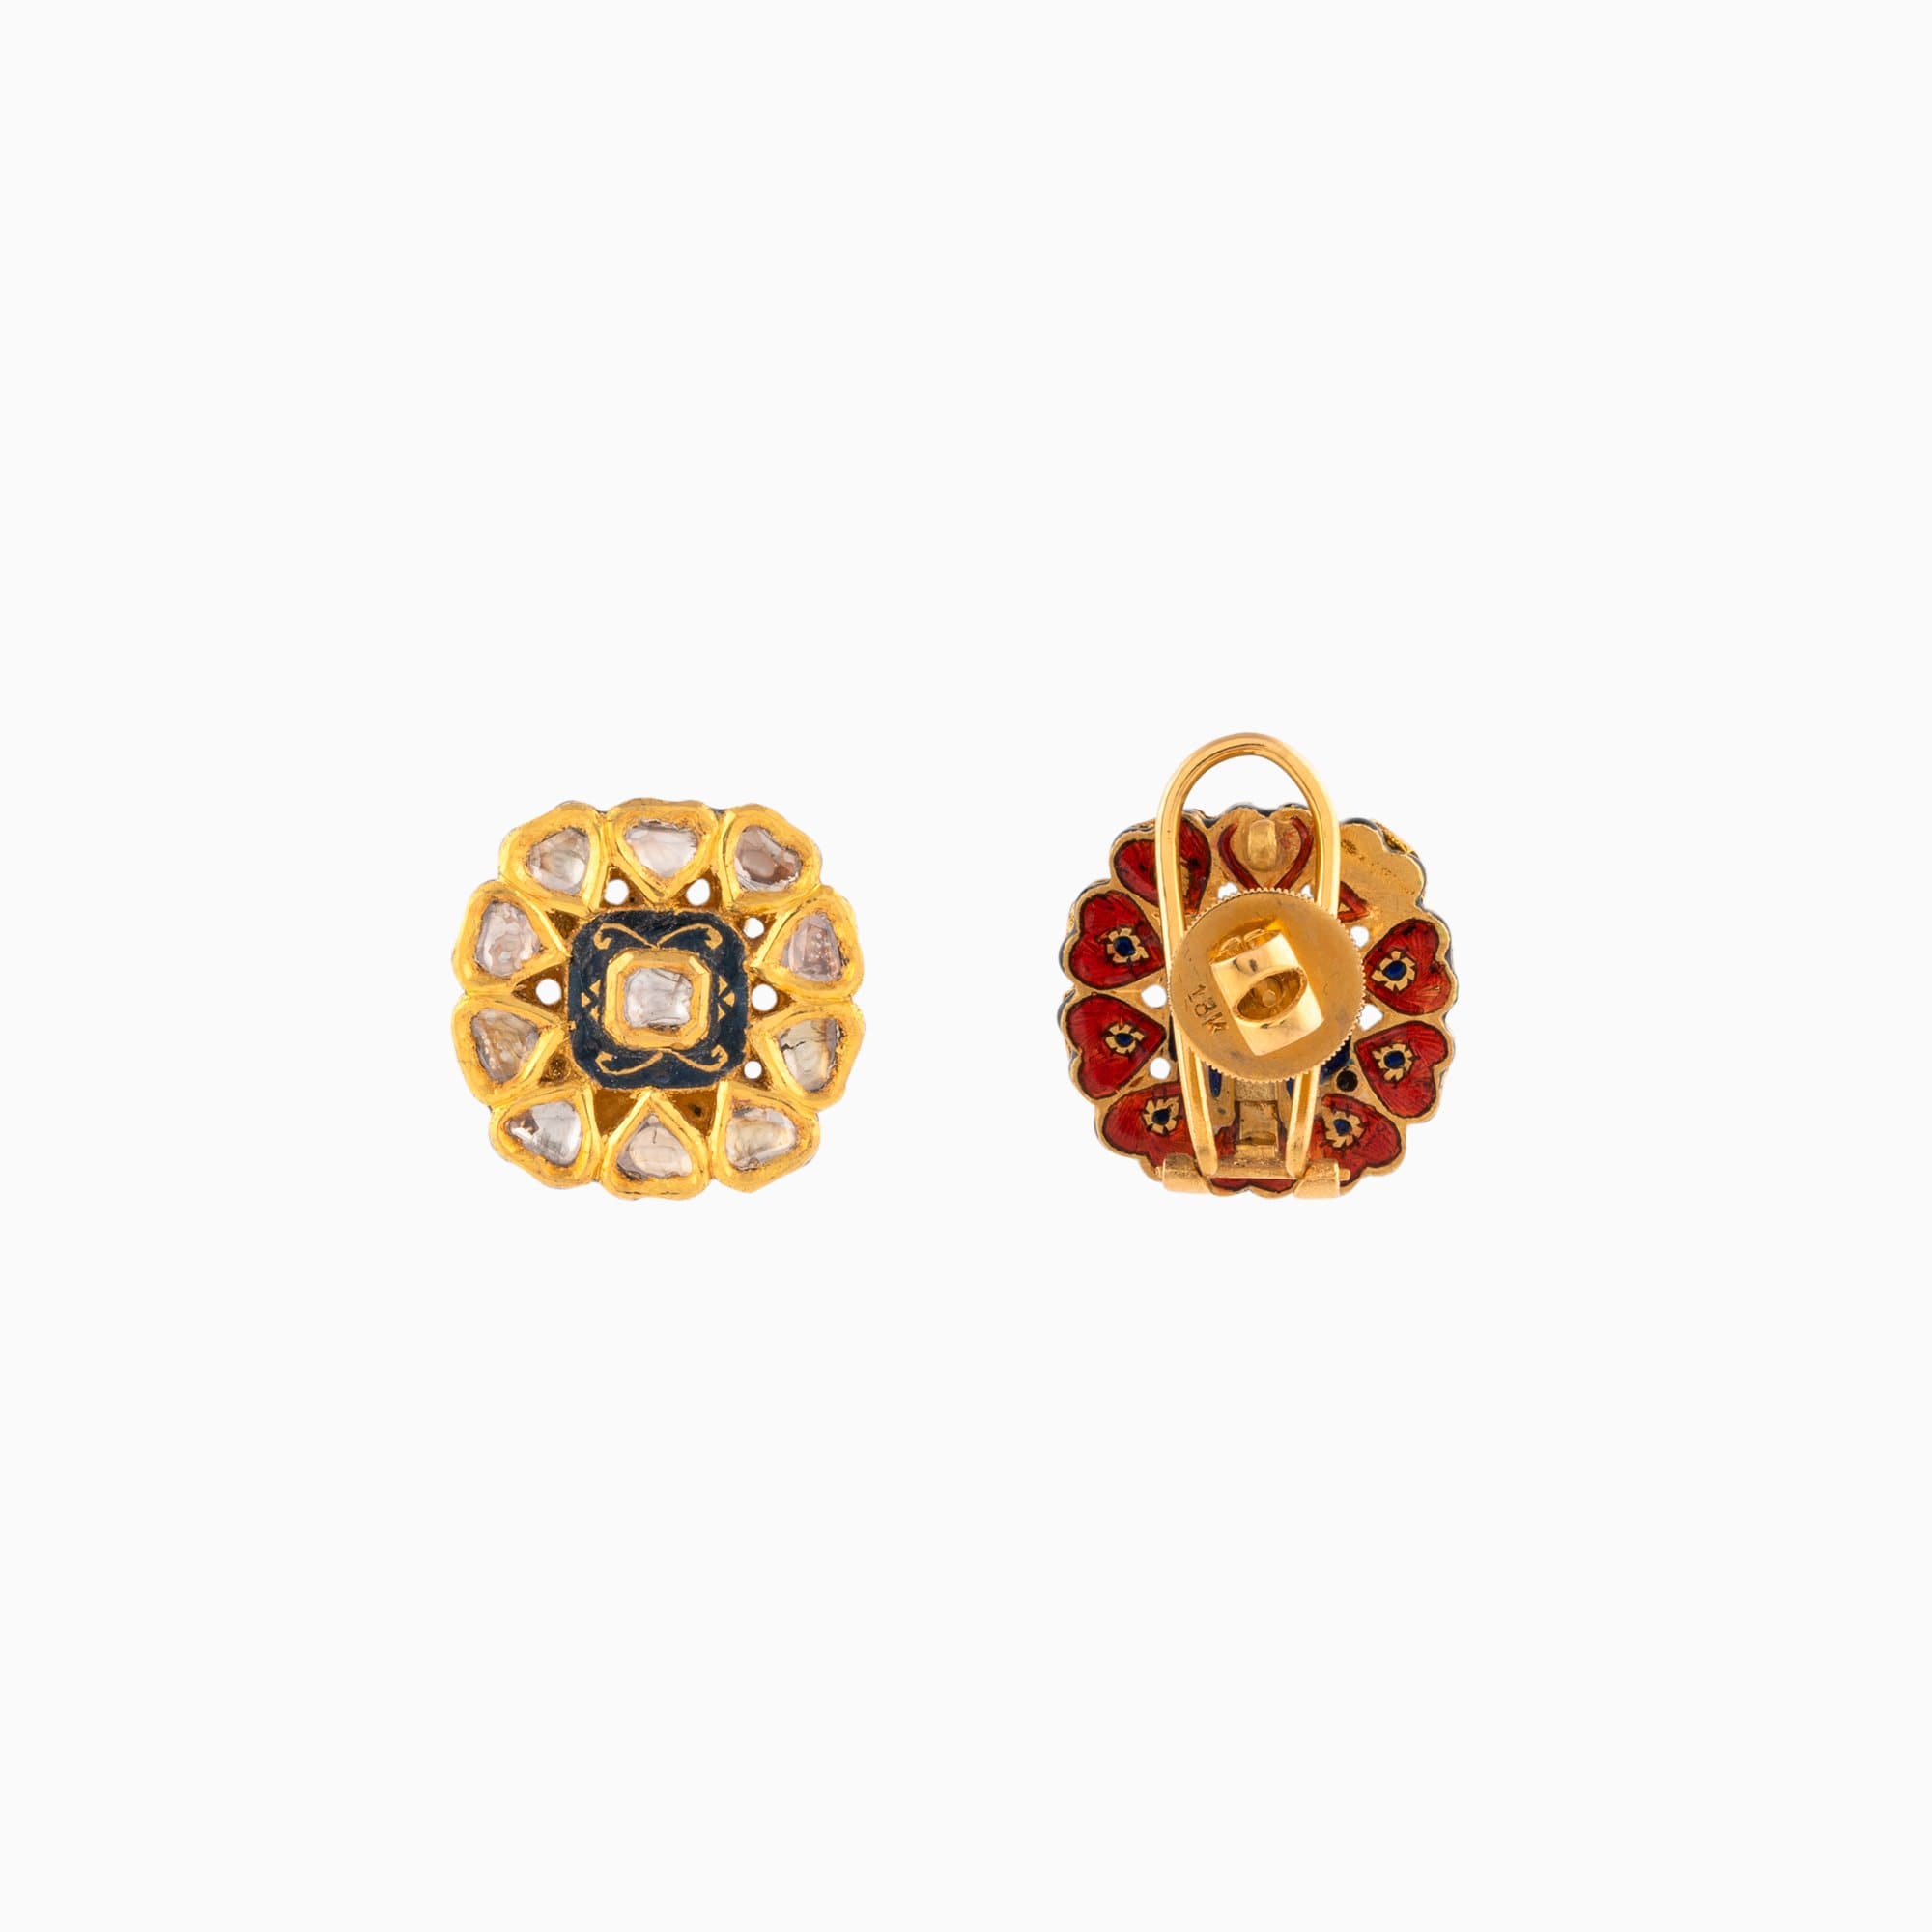 22K Gold Jadau Earring Pair with Black Meena with Uncut Diamond Polki (Handwork Enamel Doposta)- KMNE0808